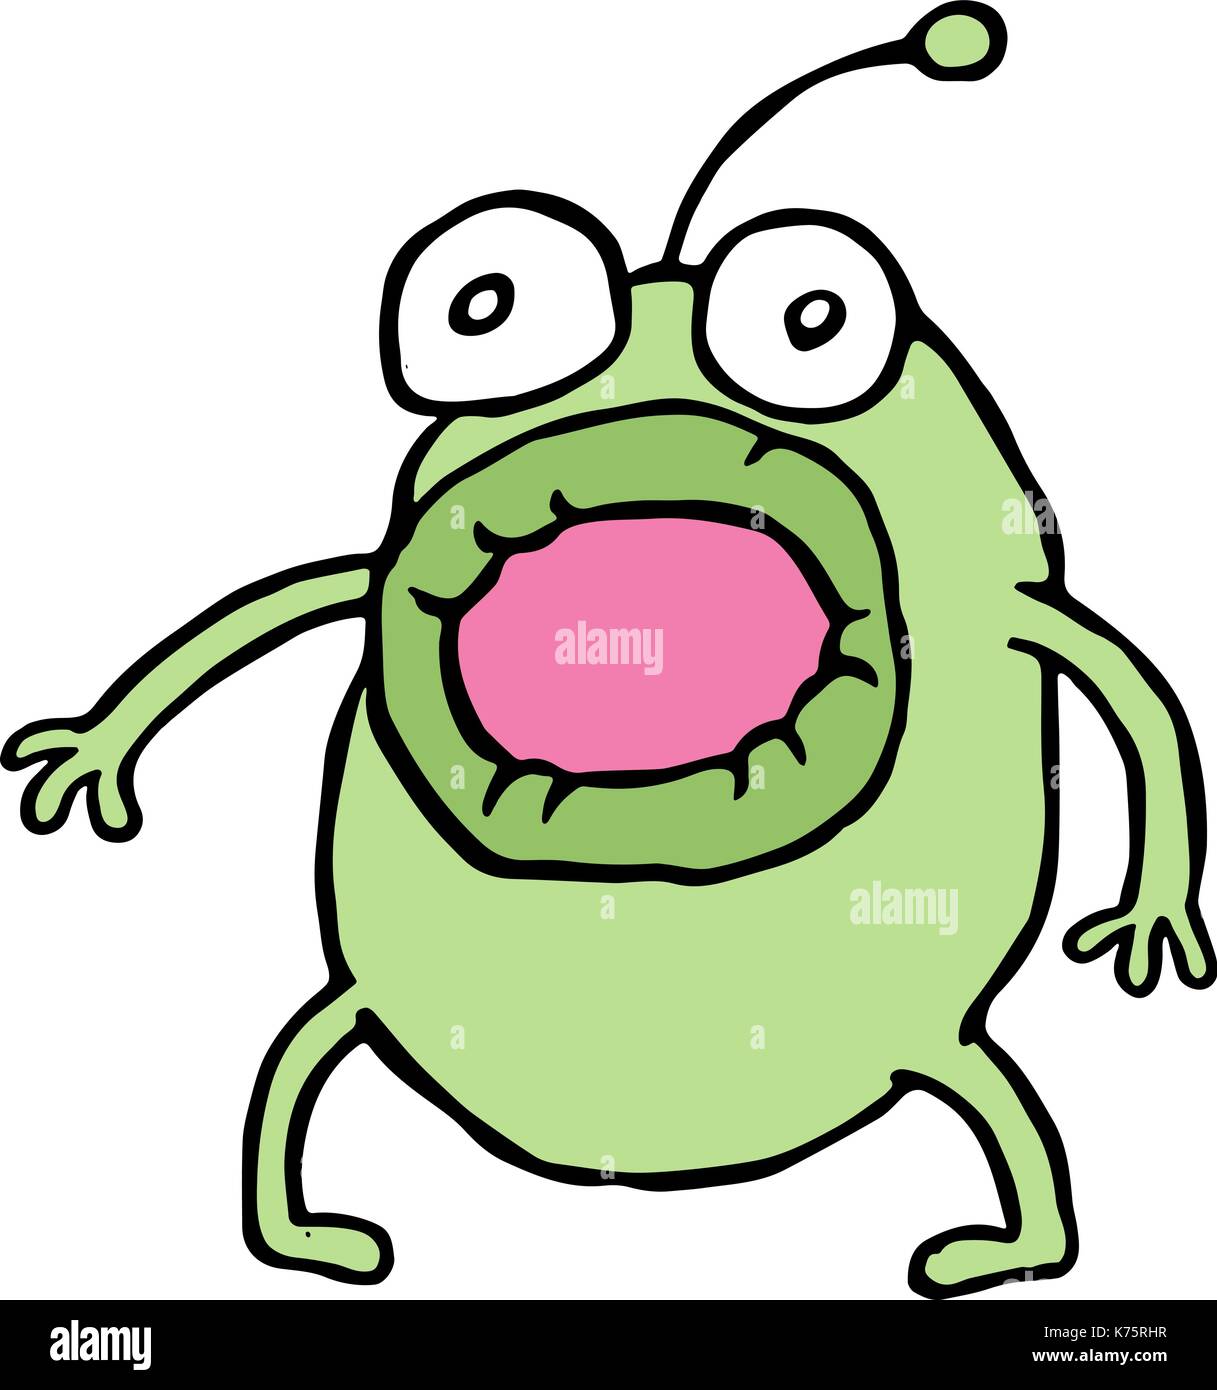 Erstaunt grüne Alien öffnete seinen Mund. Schrecken und Angst. cute cartoon Charakter. Vector Illustration. Stock Vektor